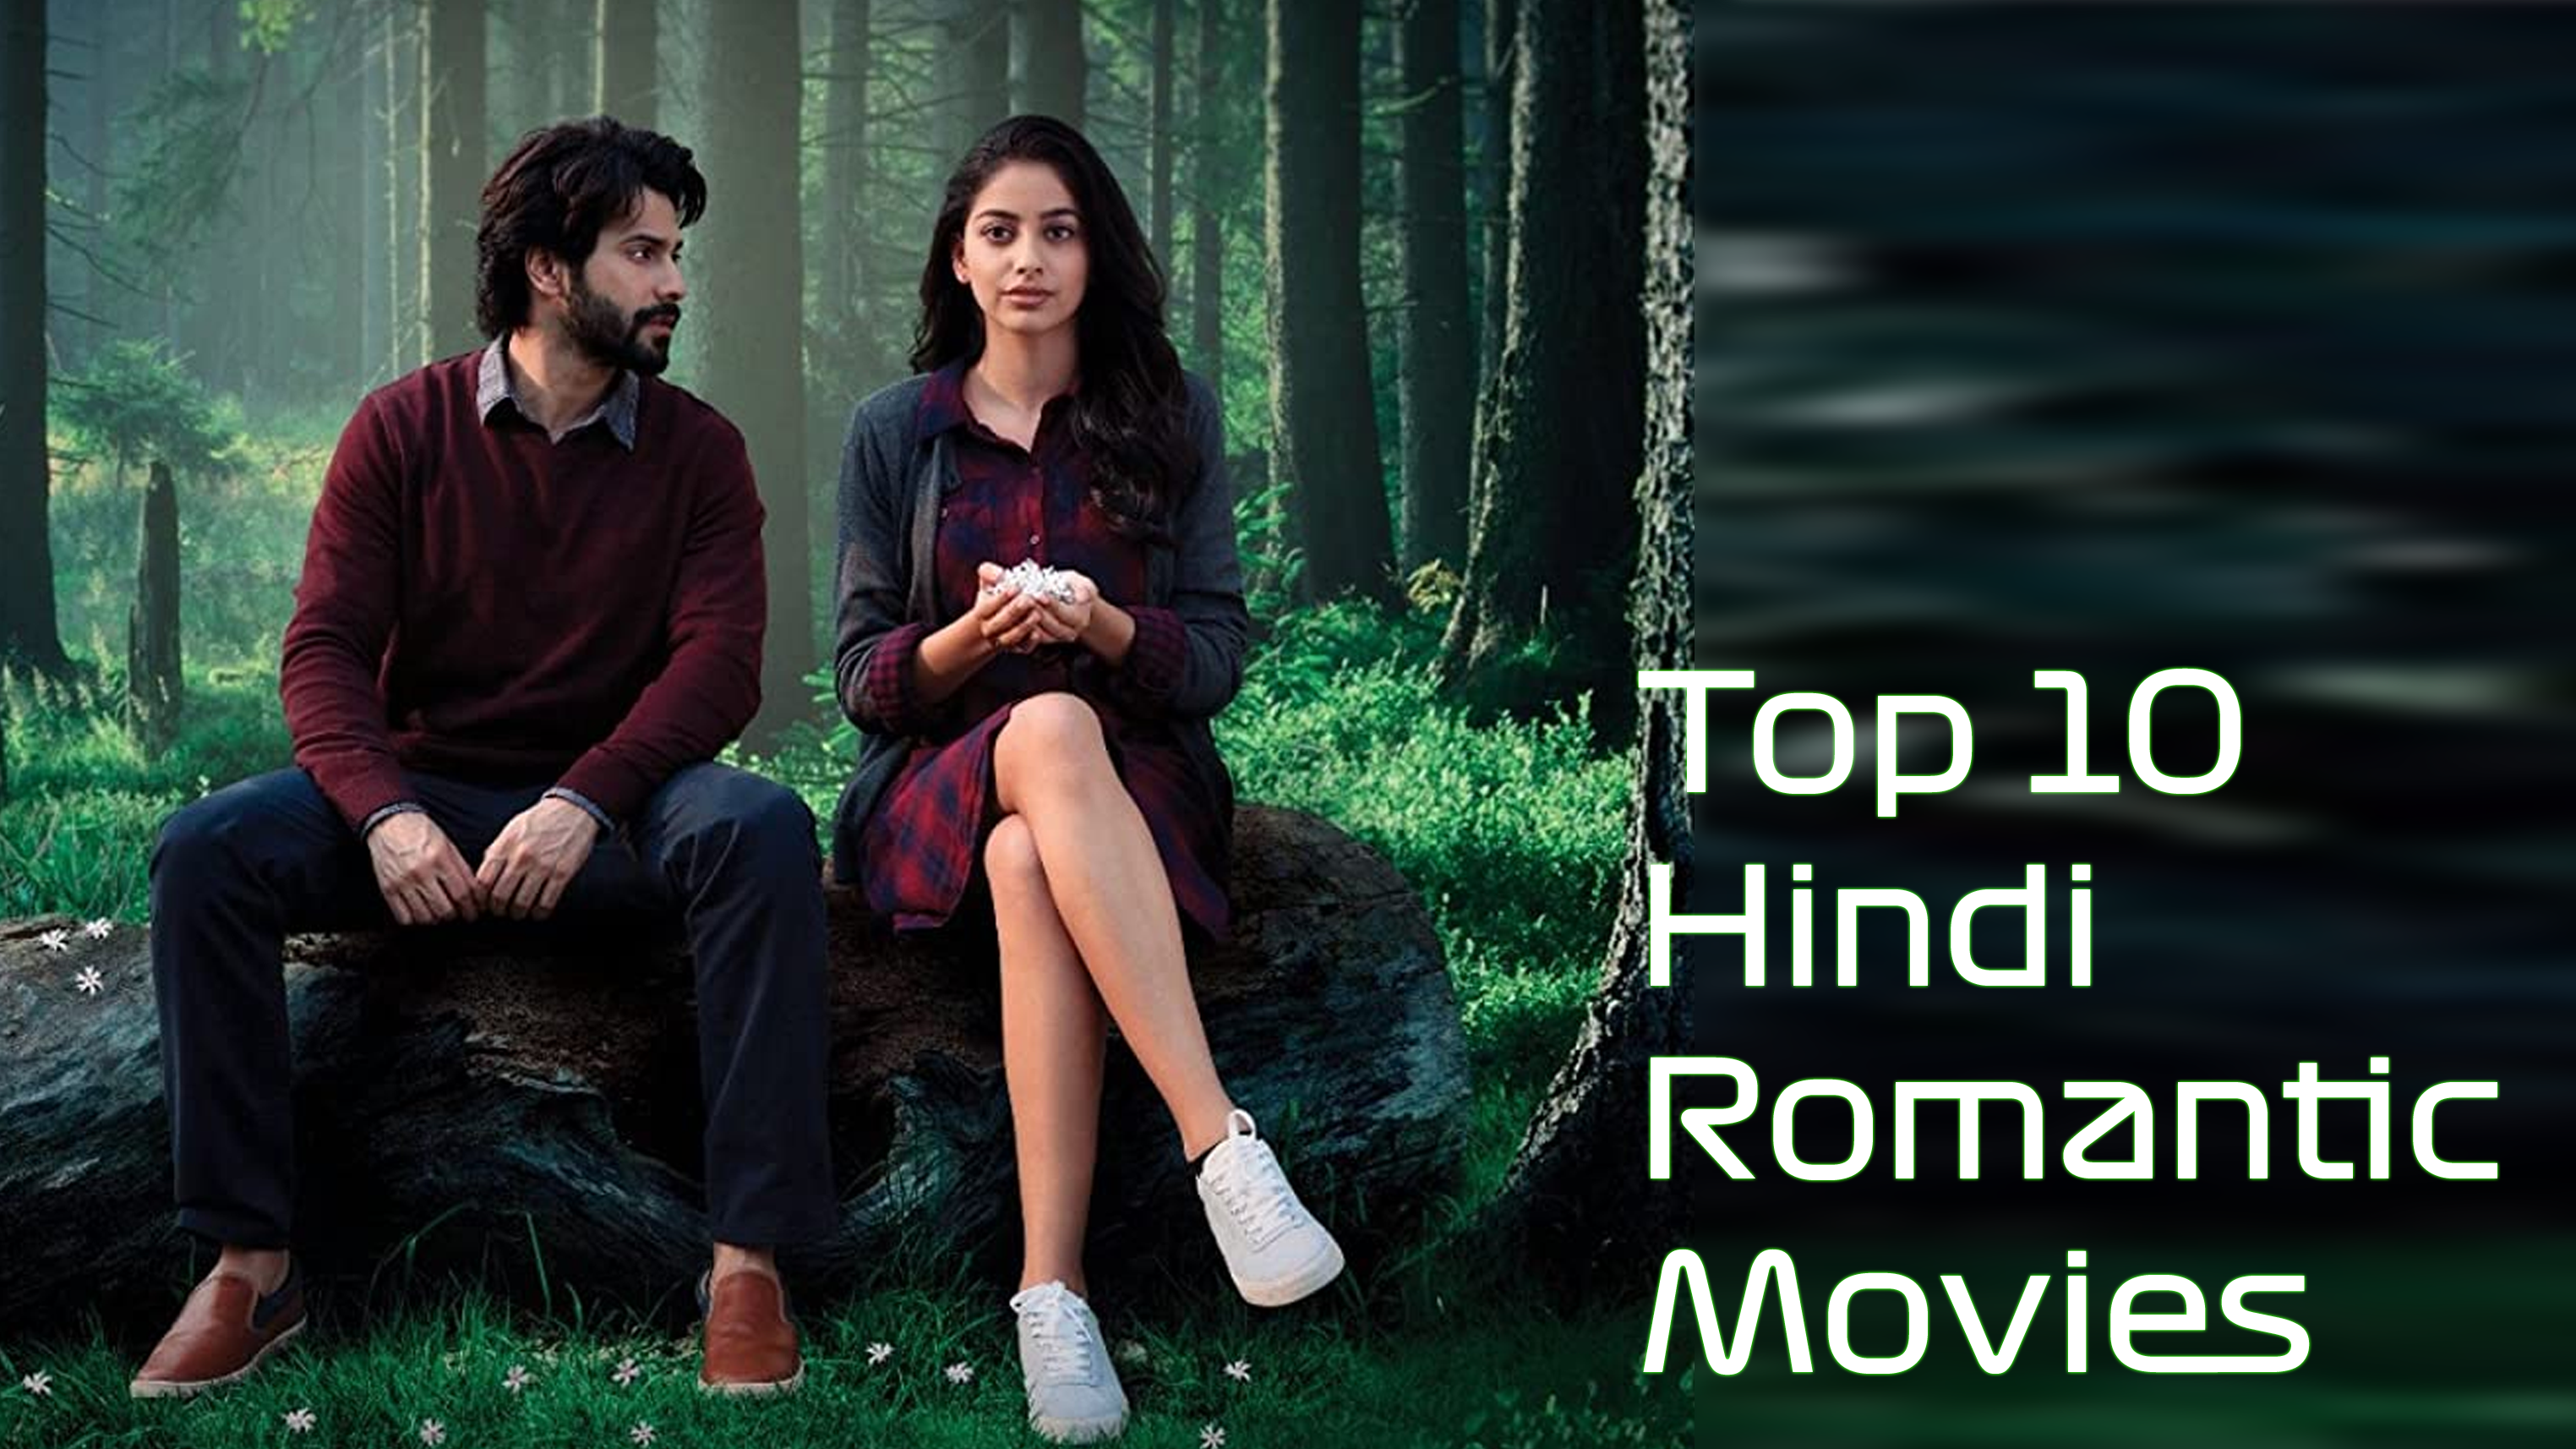 Top 10 Hindi Romantic Movies